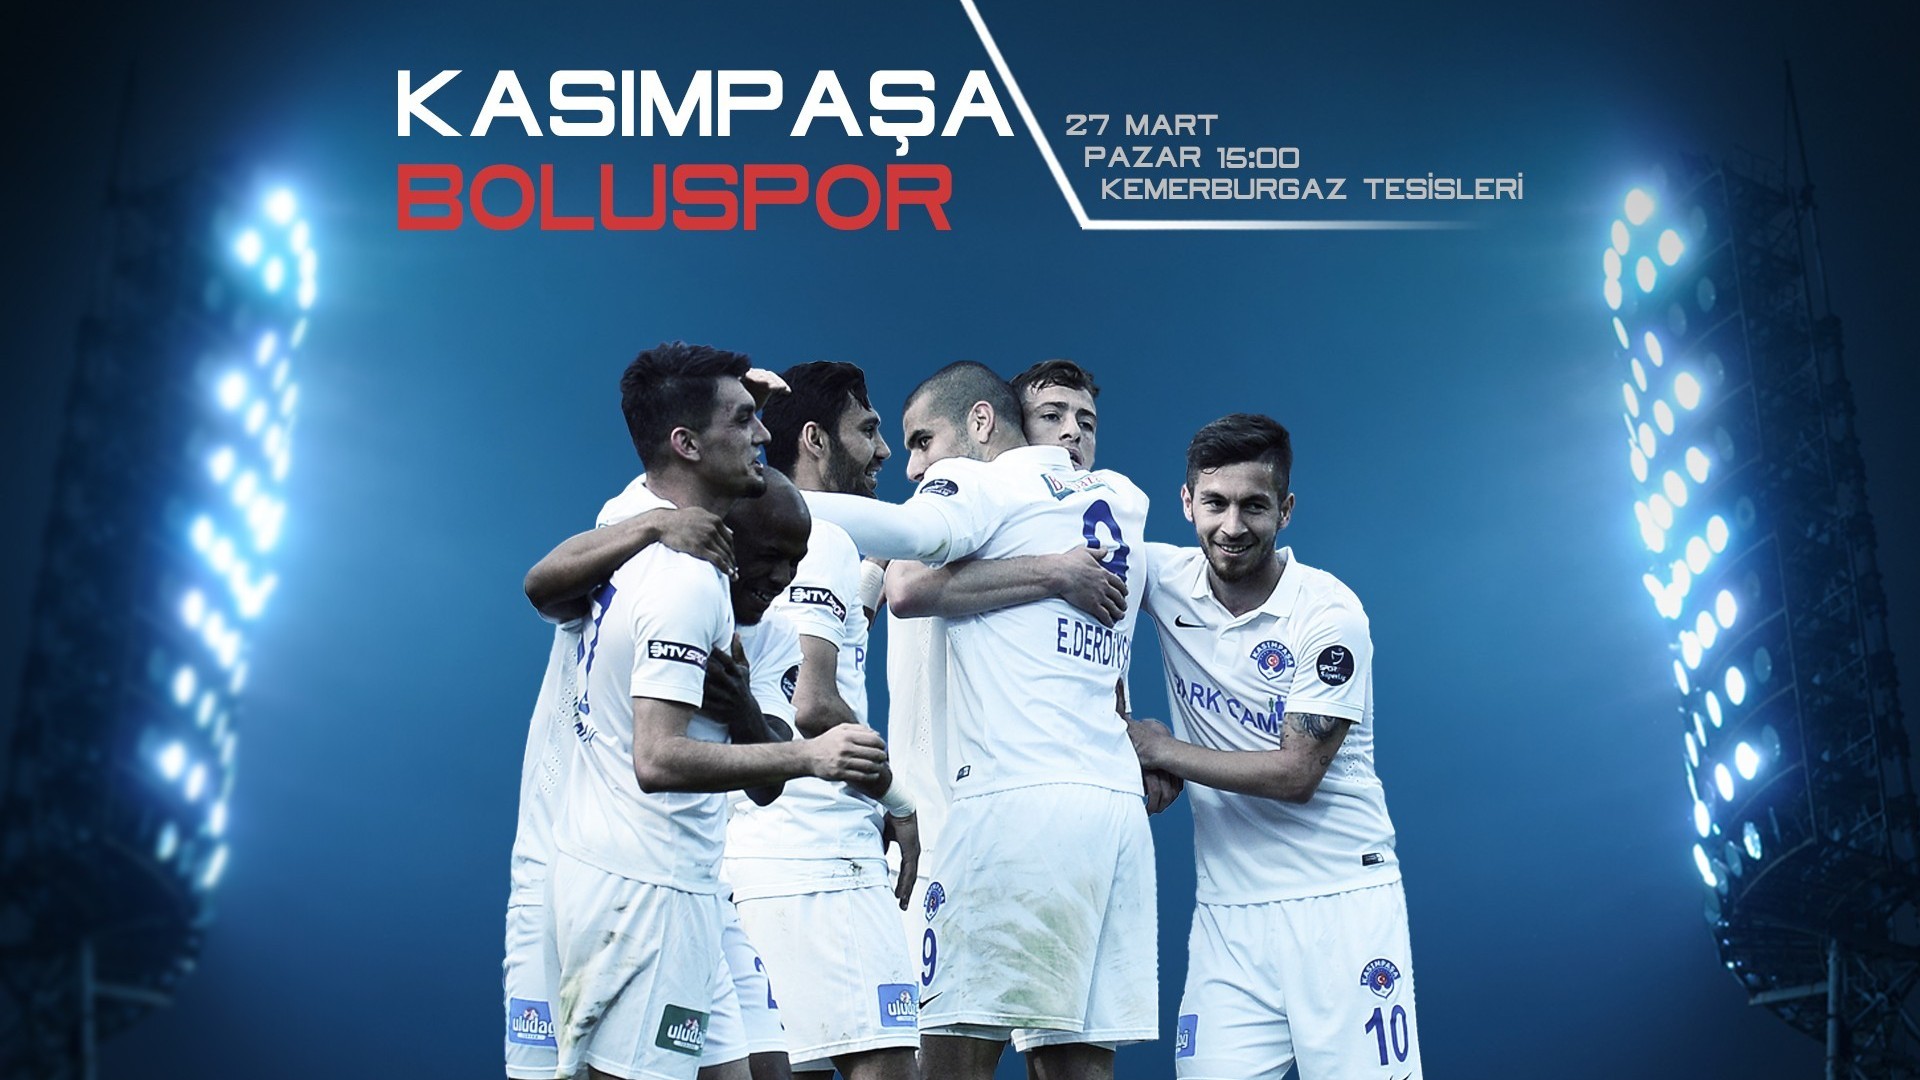 Kasımpaşa-Boluspor Friendly Game Highlights